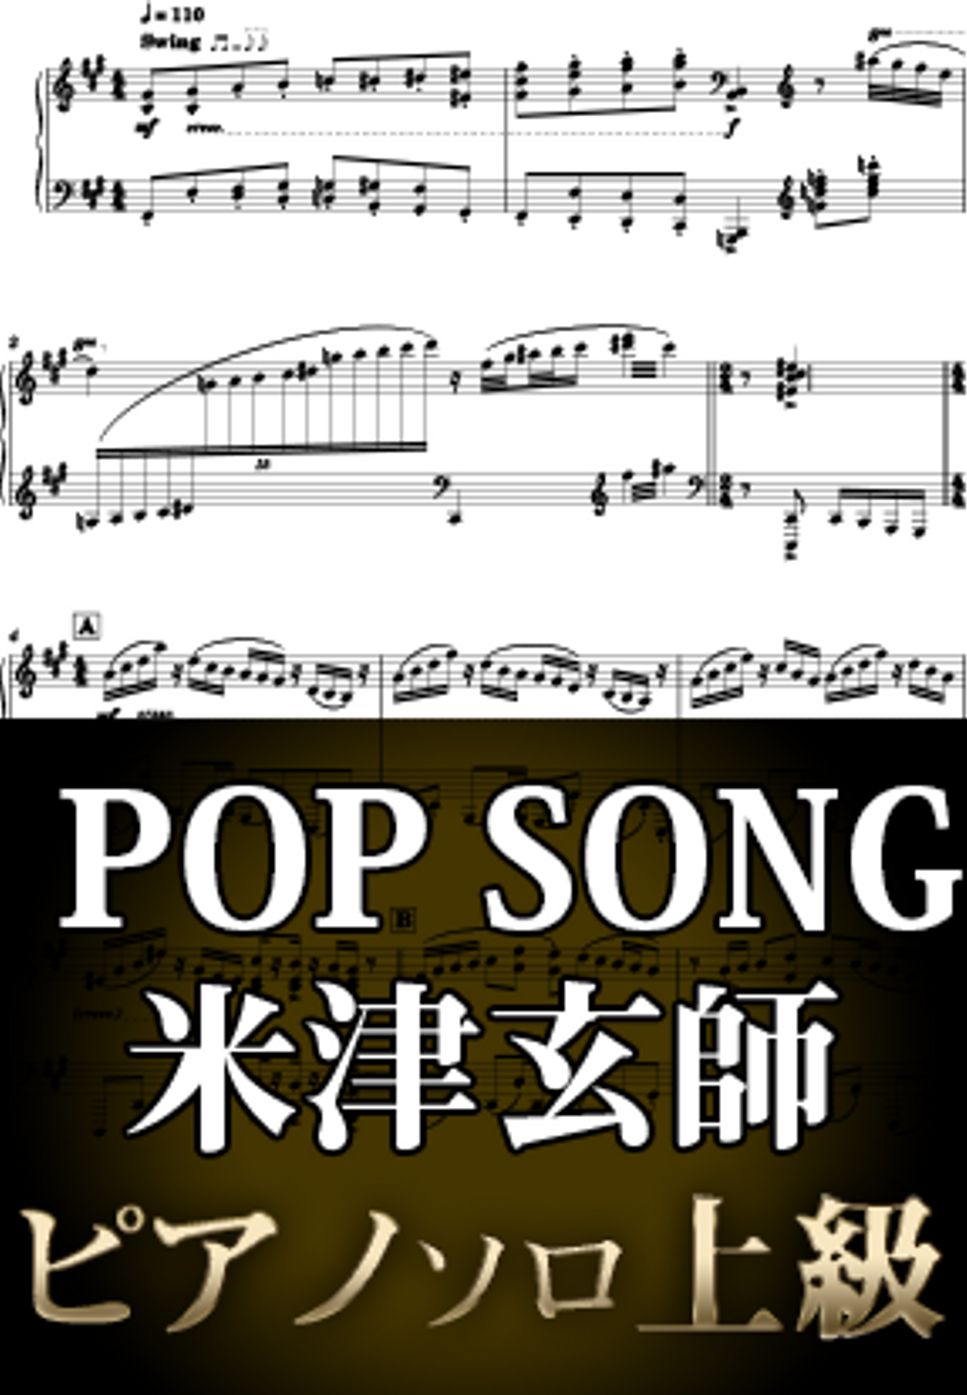 米津玄師 - POP SONG (ピアノソロ上級  / 「PlayStation」TVCM) by Suu